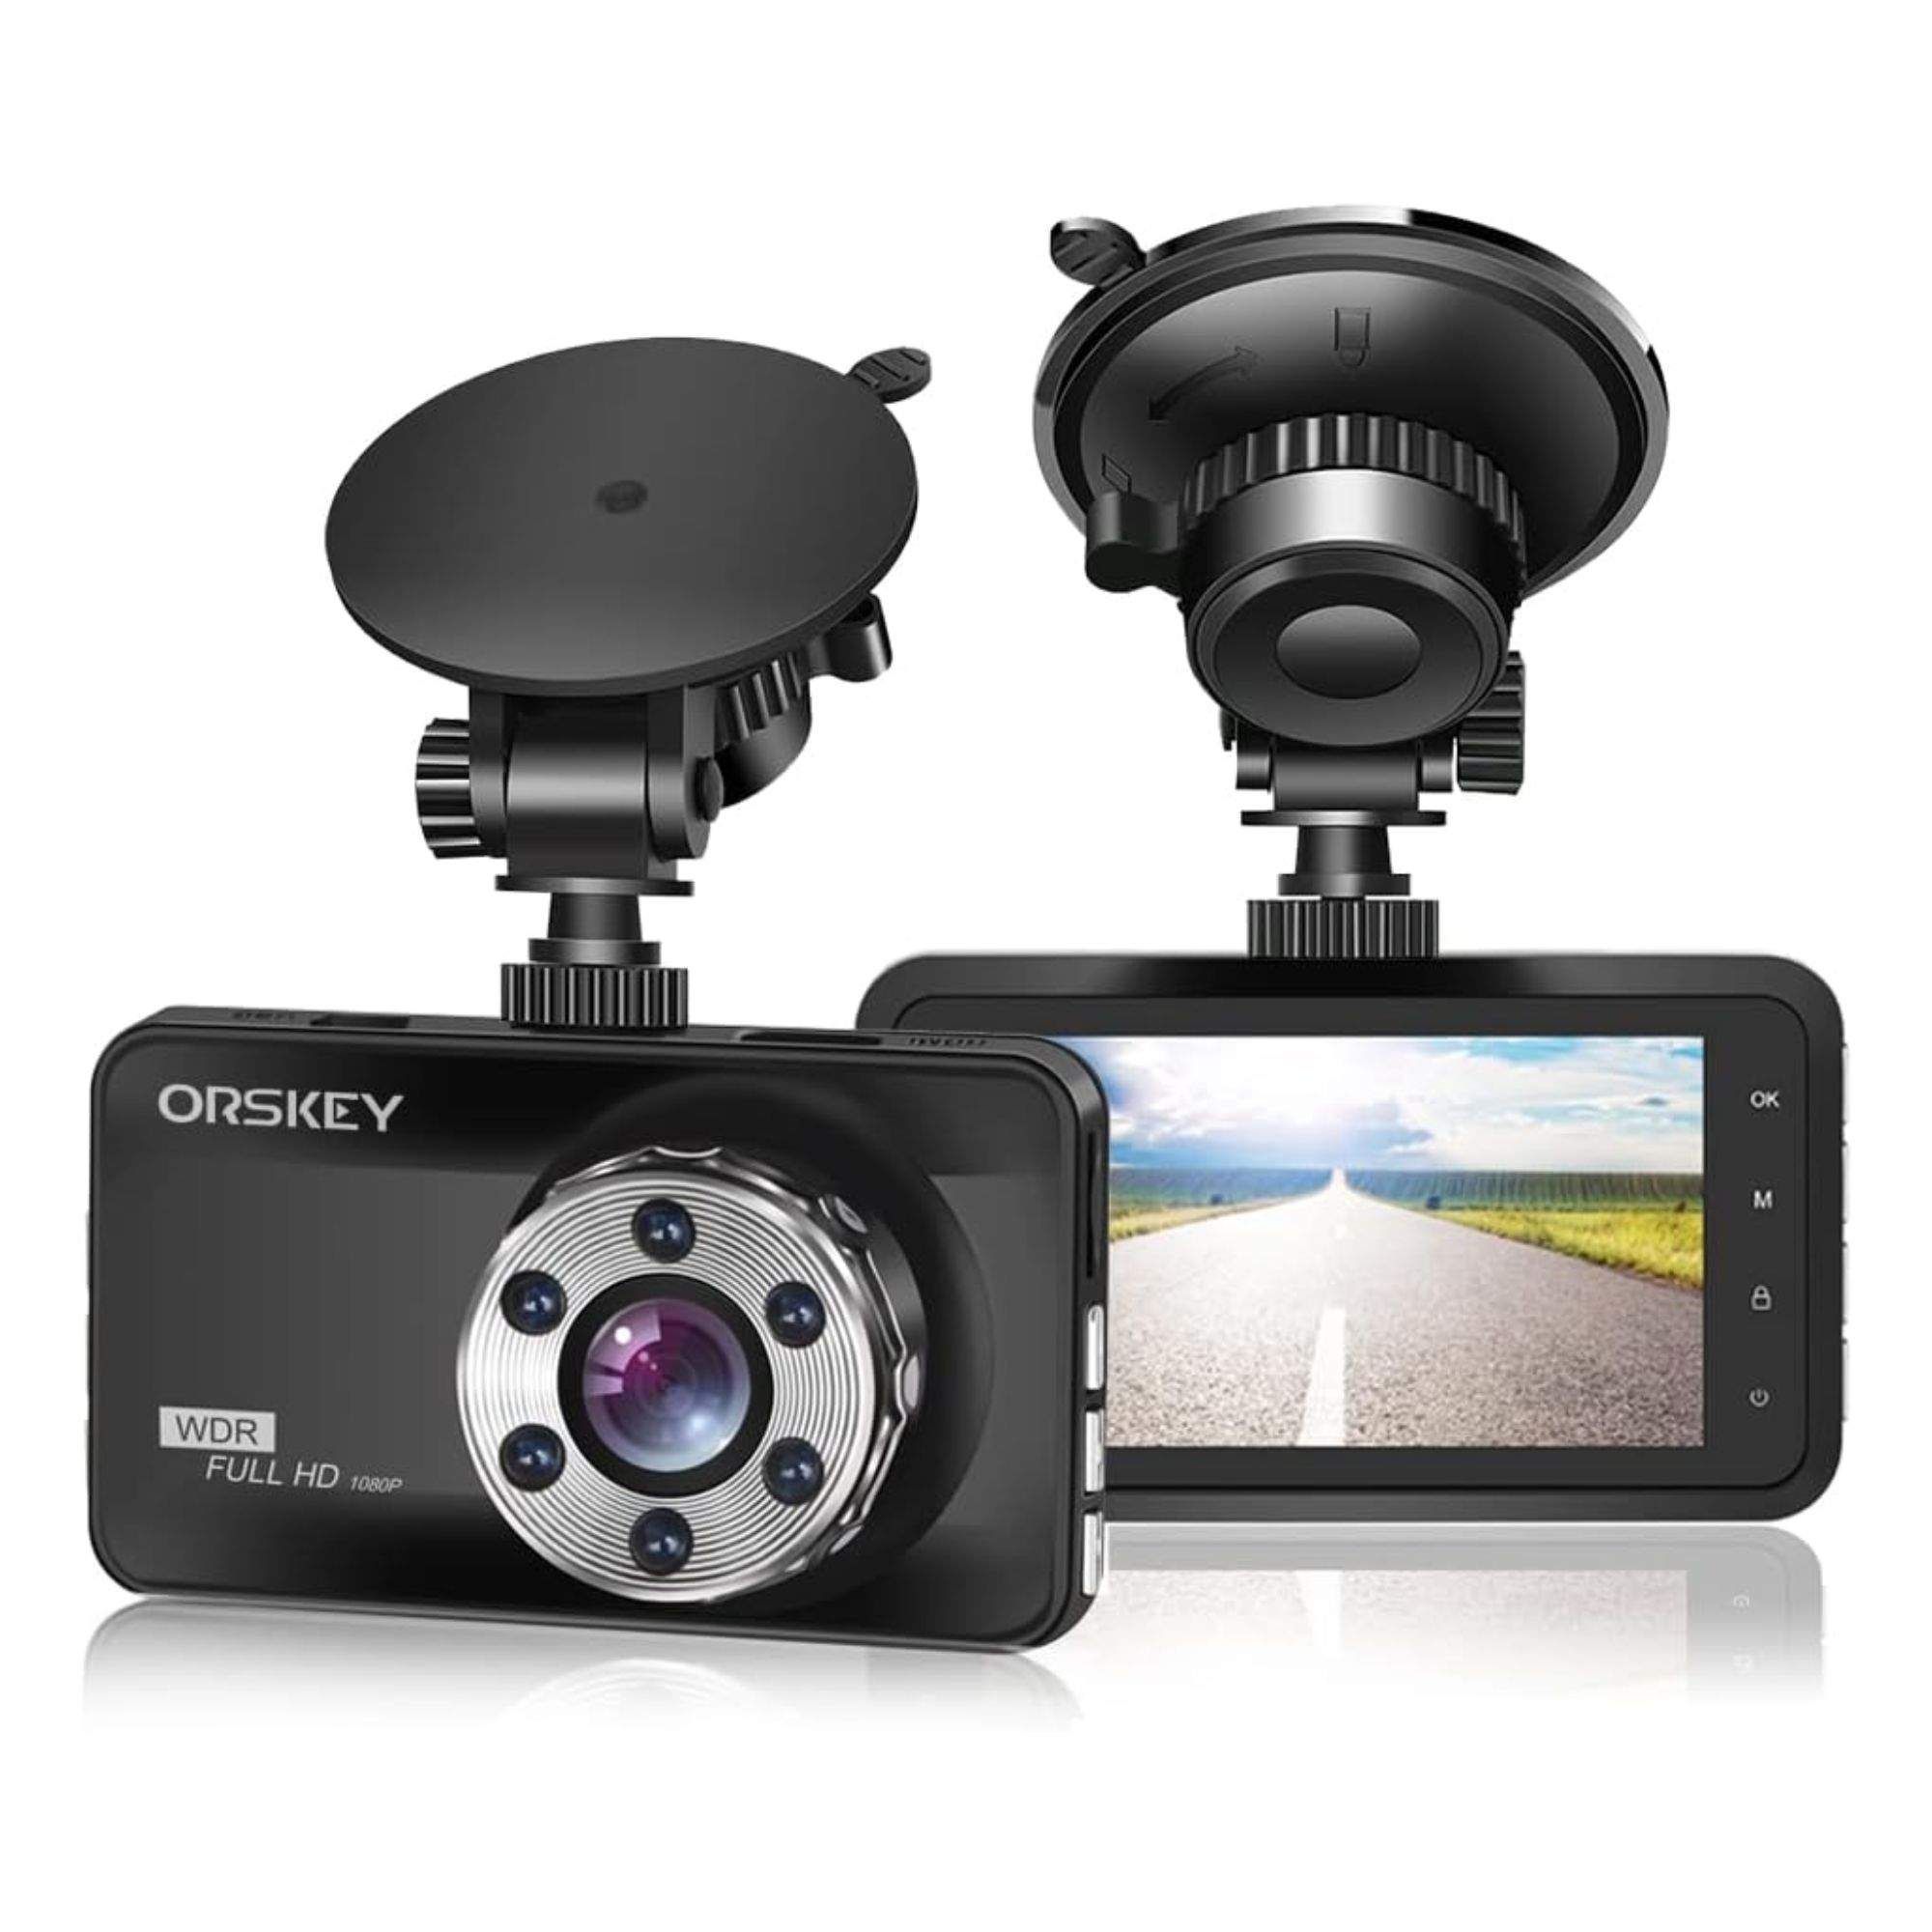 Amb aquesta càmera per al teu cotxe podràs gravar tota mena d'infraccions i accidents en HD a meitat de preu